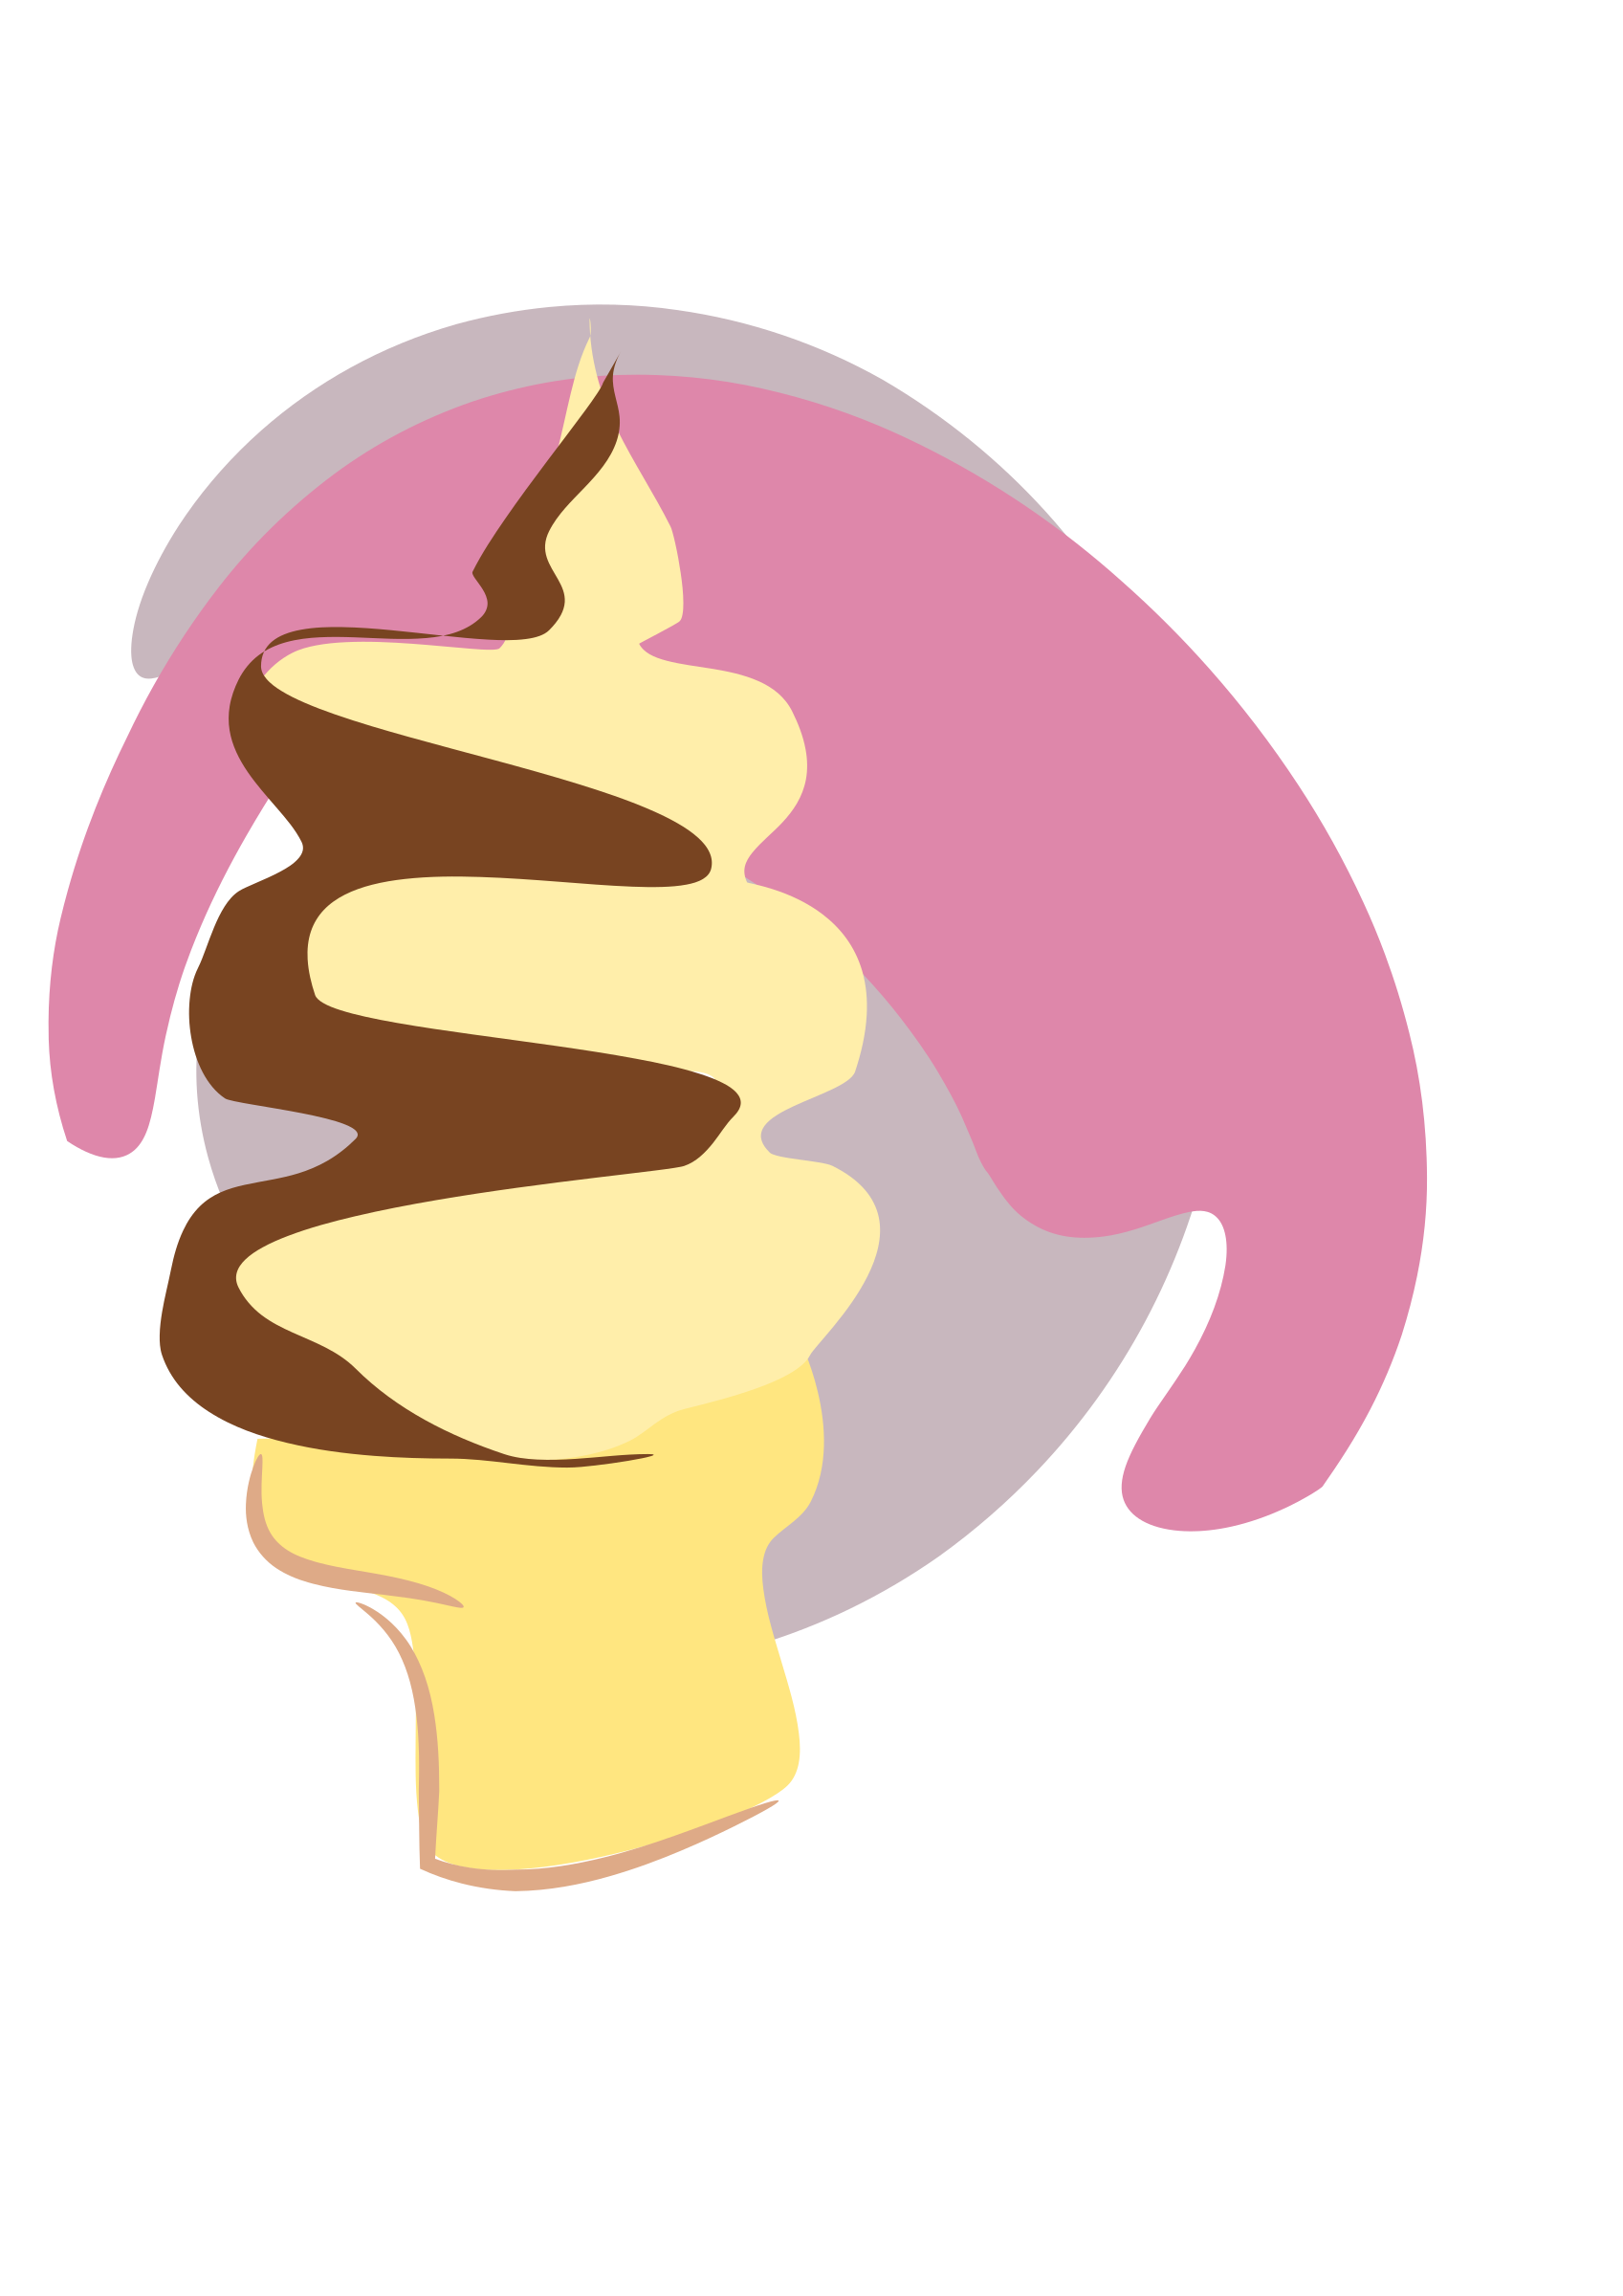 Icecream logo